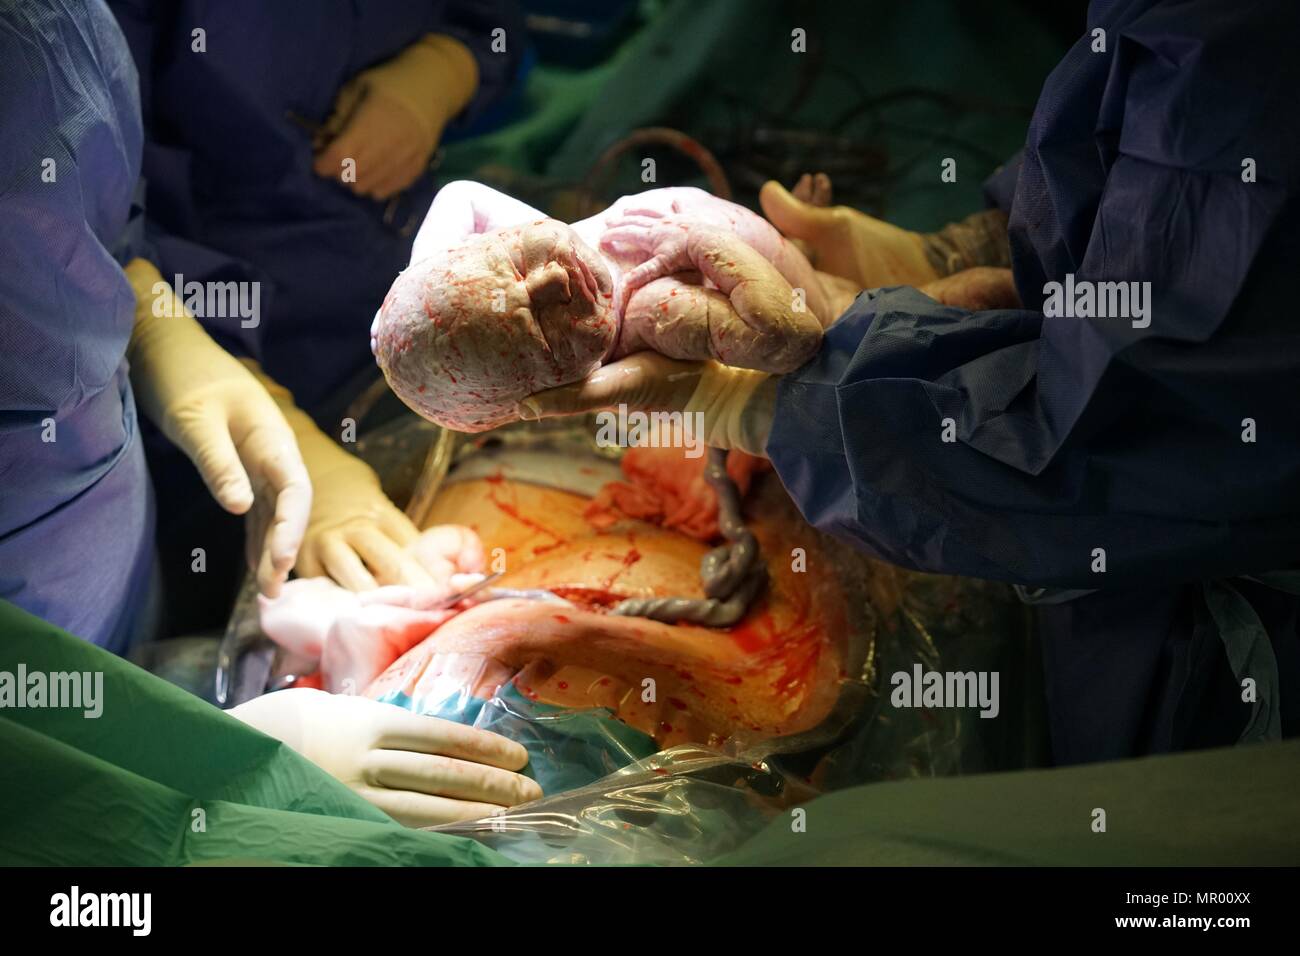 Il bambino è nato da parto cesareo in ospedale coperta in vernix, cordone ombelicale ancora attaccato e madre della ferita chirurgica in background Foto Stock